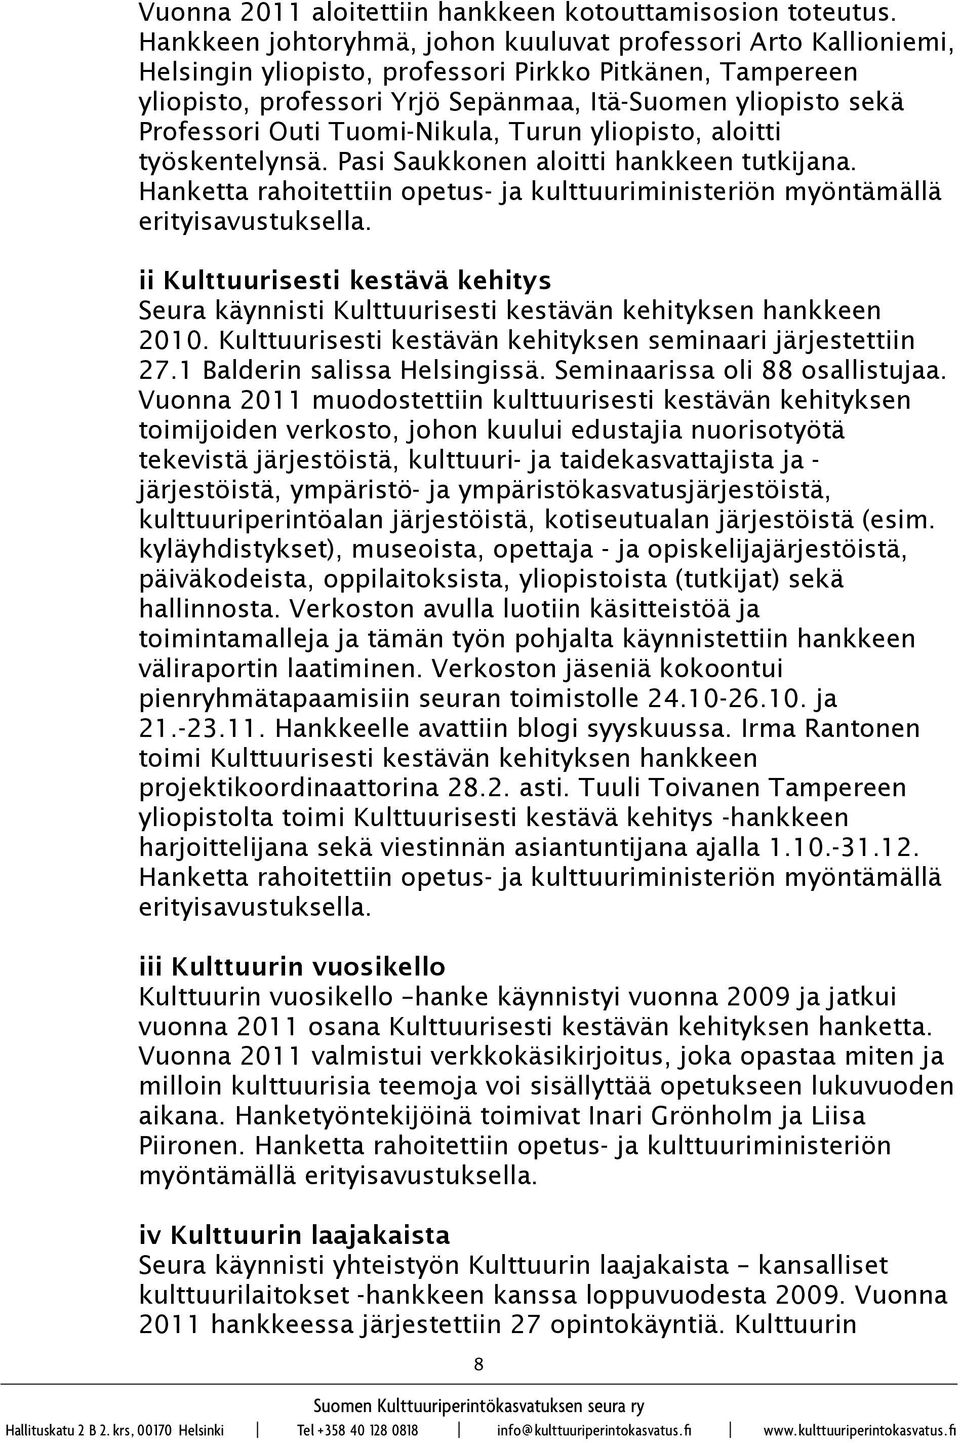 Outi Tuomi-Nikula, Turun yliopisto, aloitti työskentelynsä. Pasi Saukkonen aloitti hankkeen tutkijana. Hanketta rahoitettiin opetus- ja kulttuuriministeriön myöntämällä erityisavustuksella.